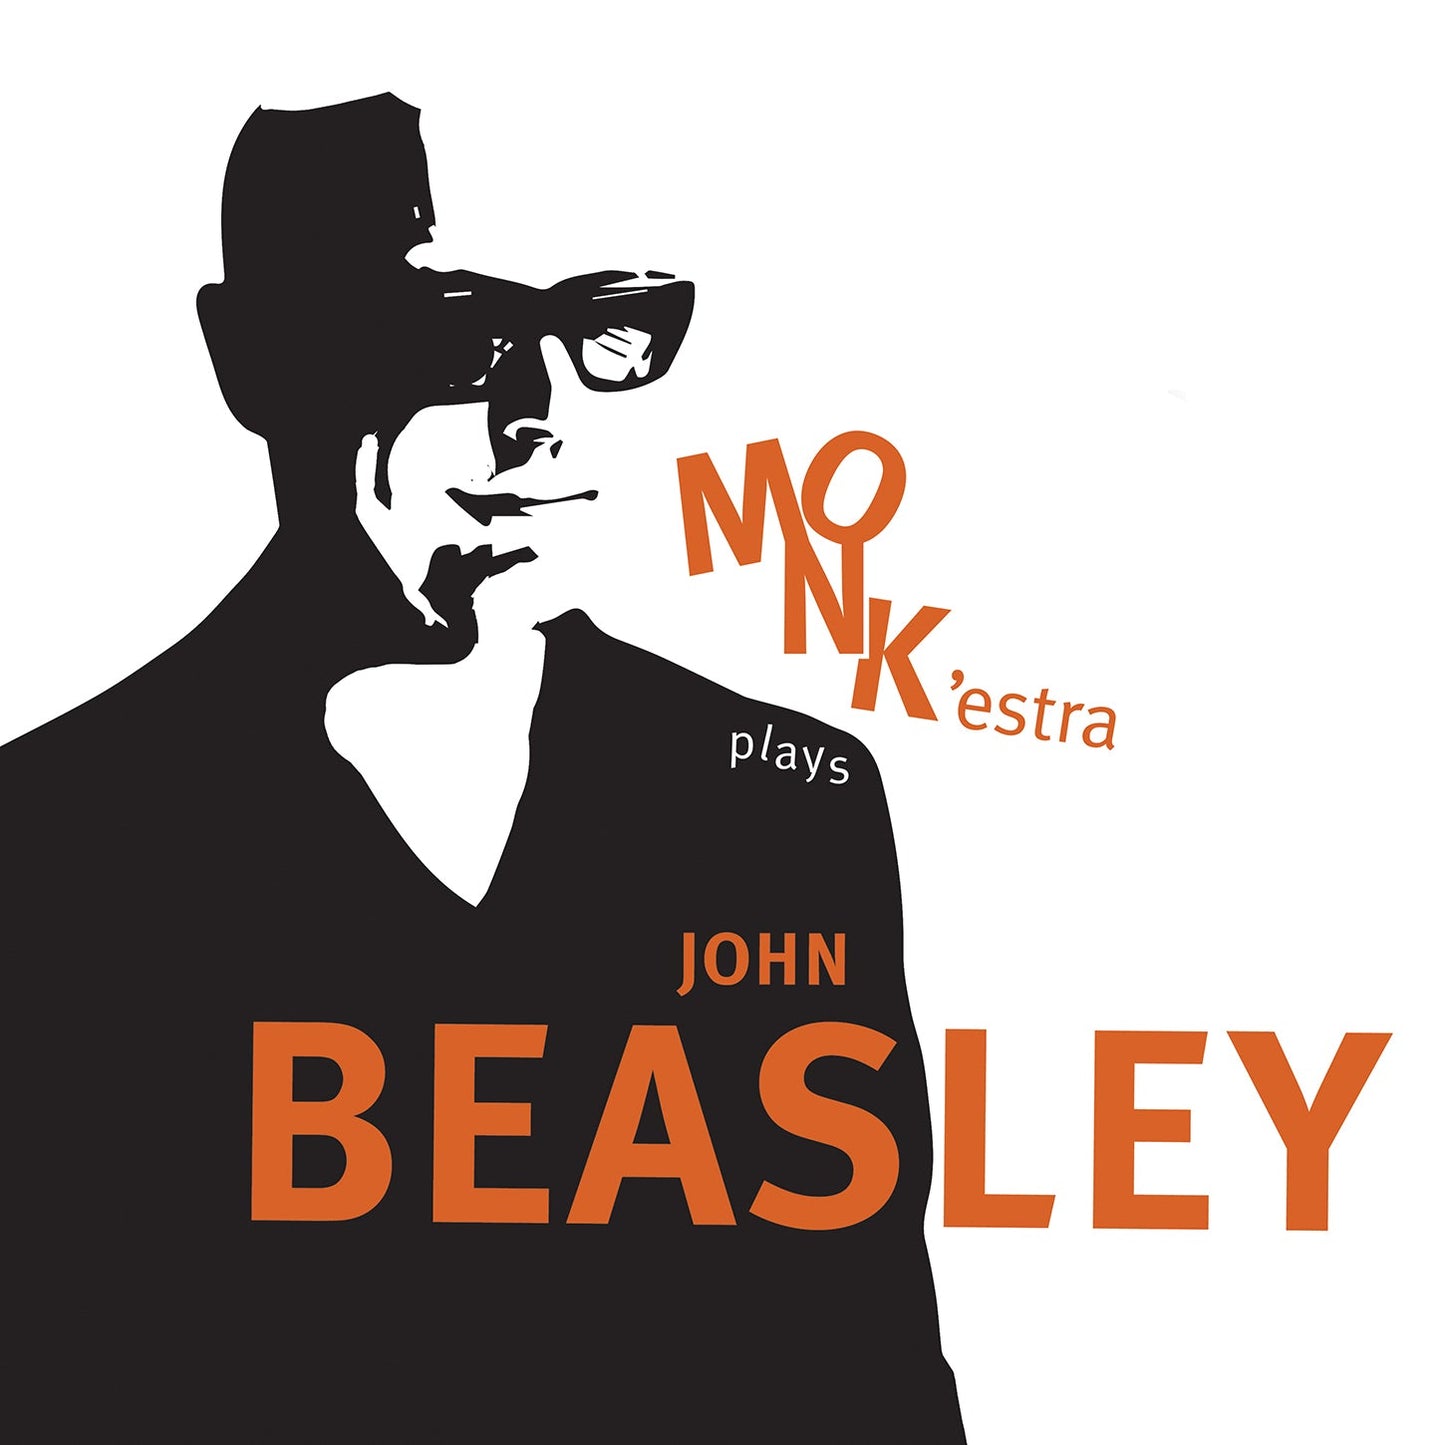 Monk'Estra Plays John Beasley